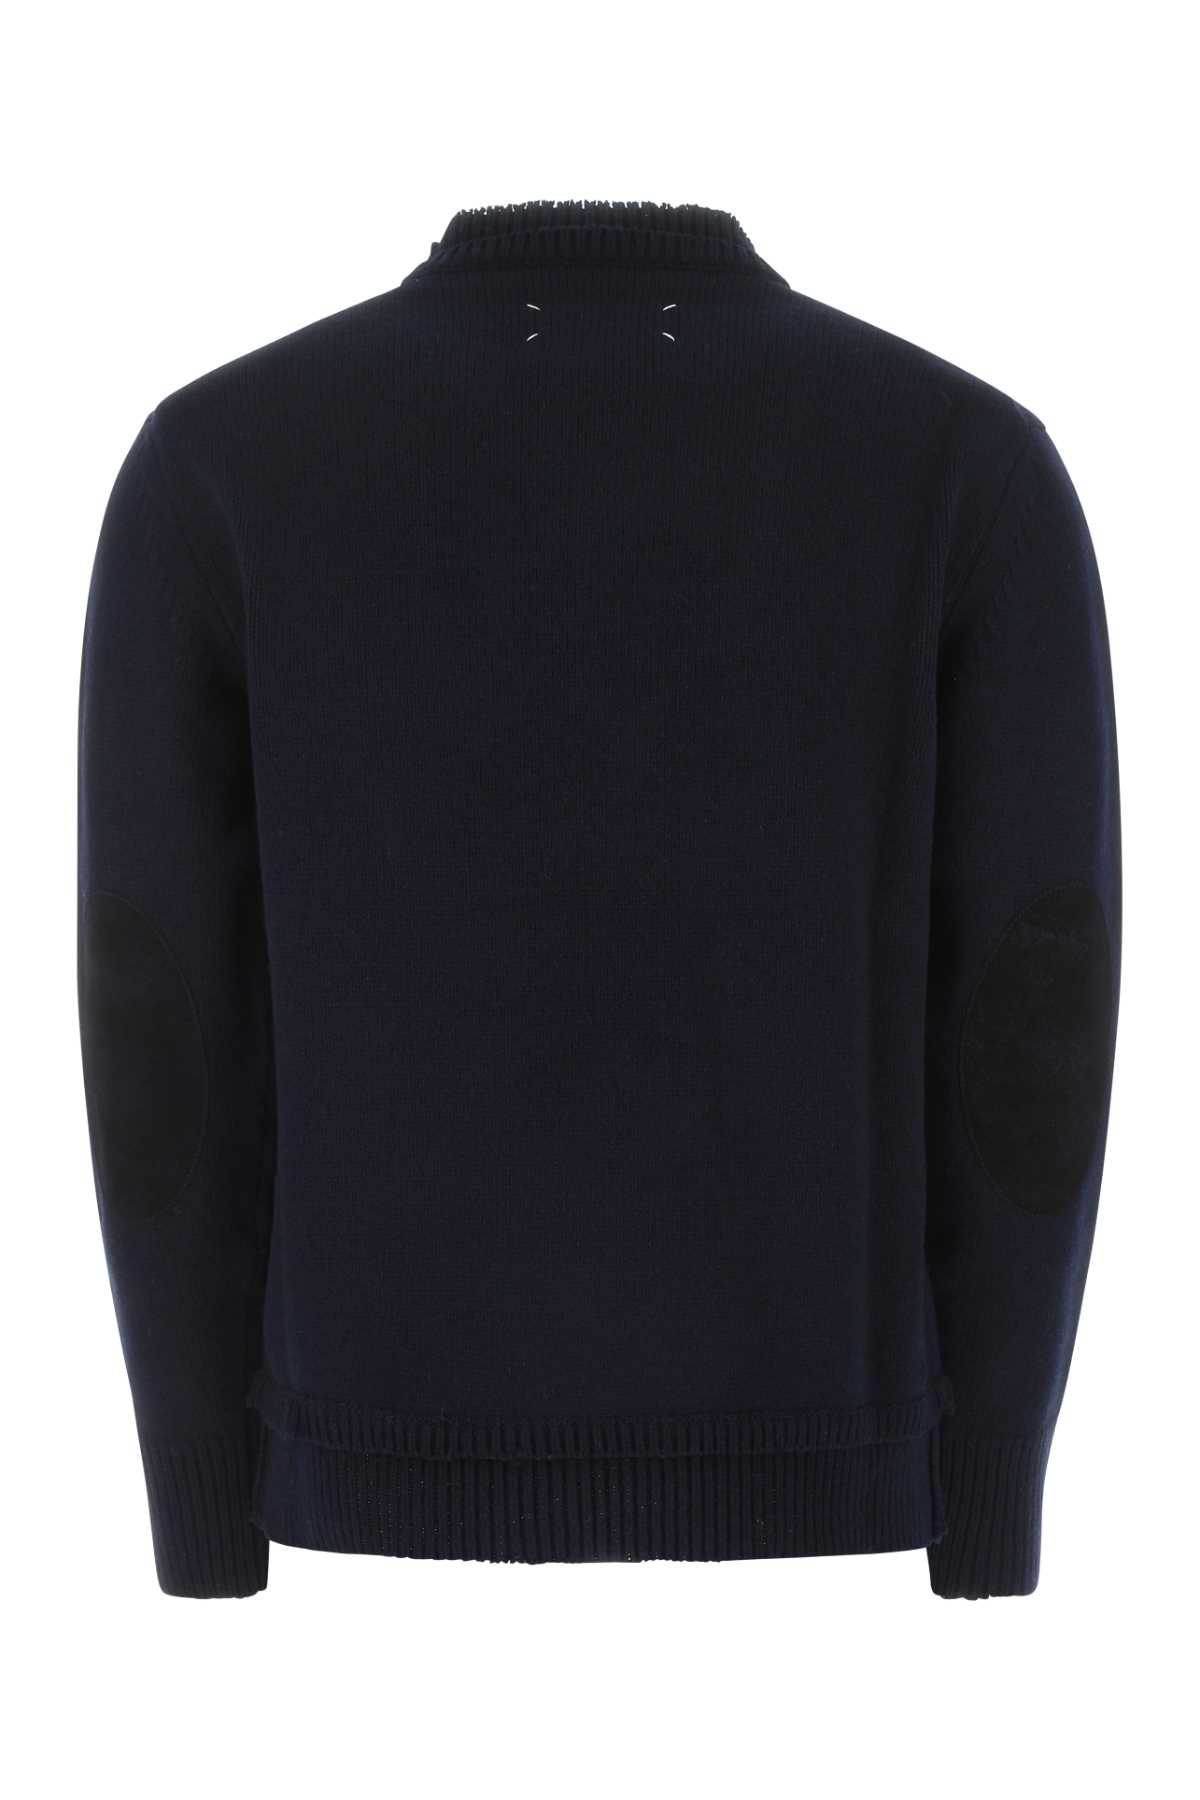 Maison Margiela Navy Blue Wool Blend Sweater In 511f